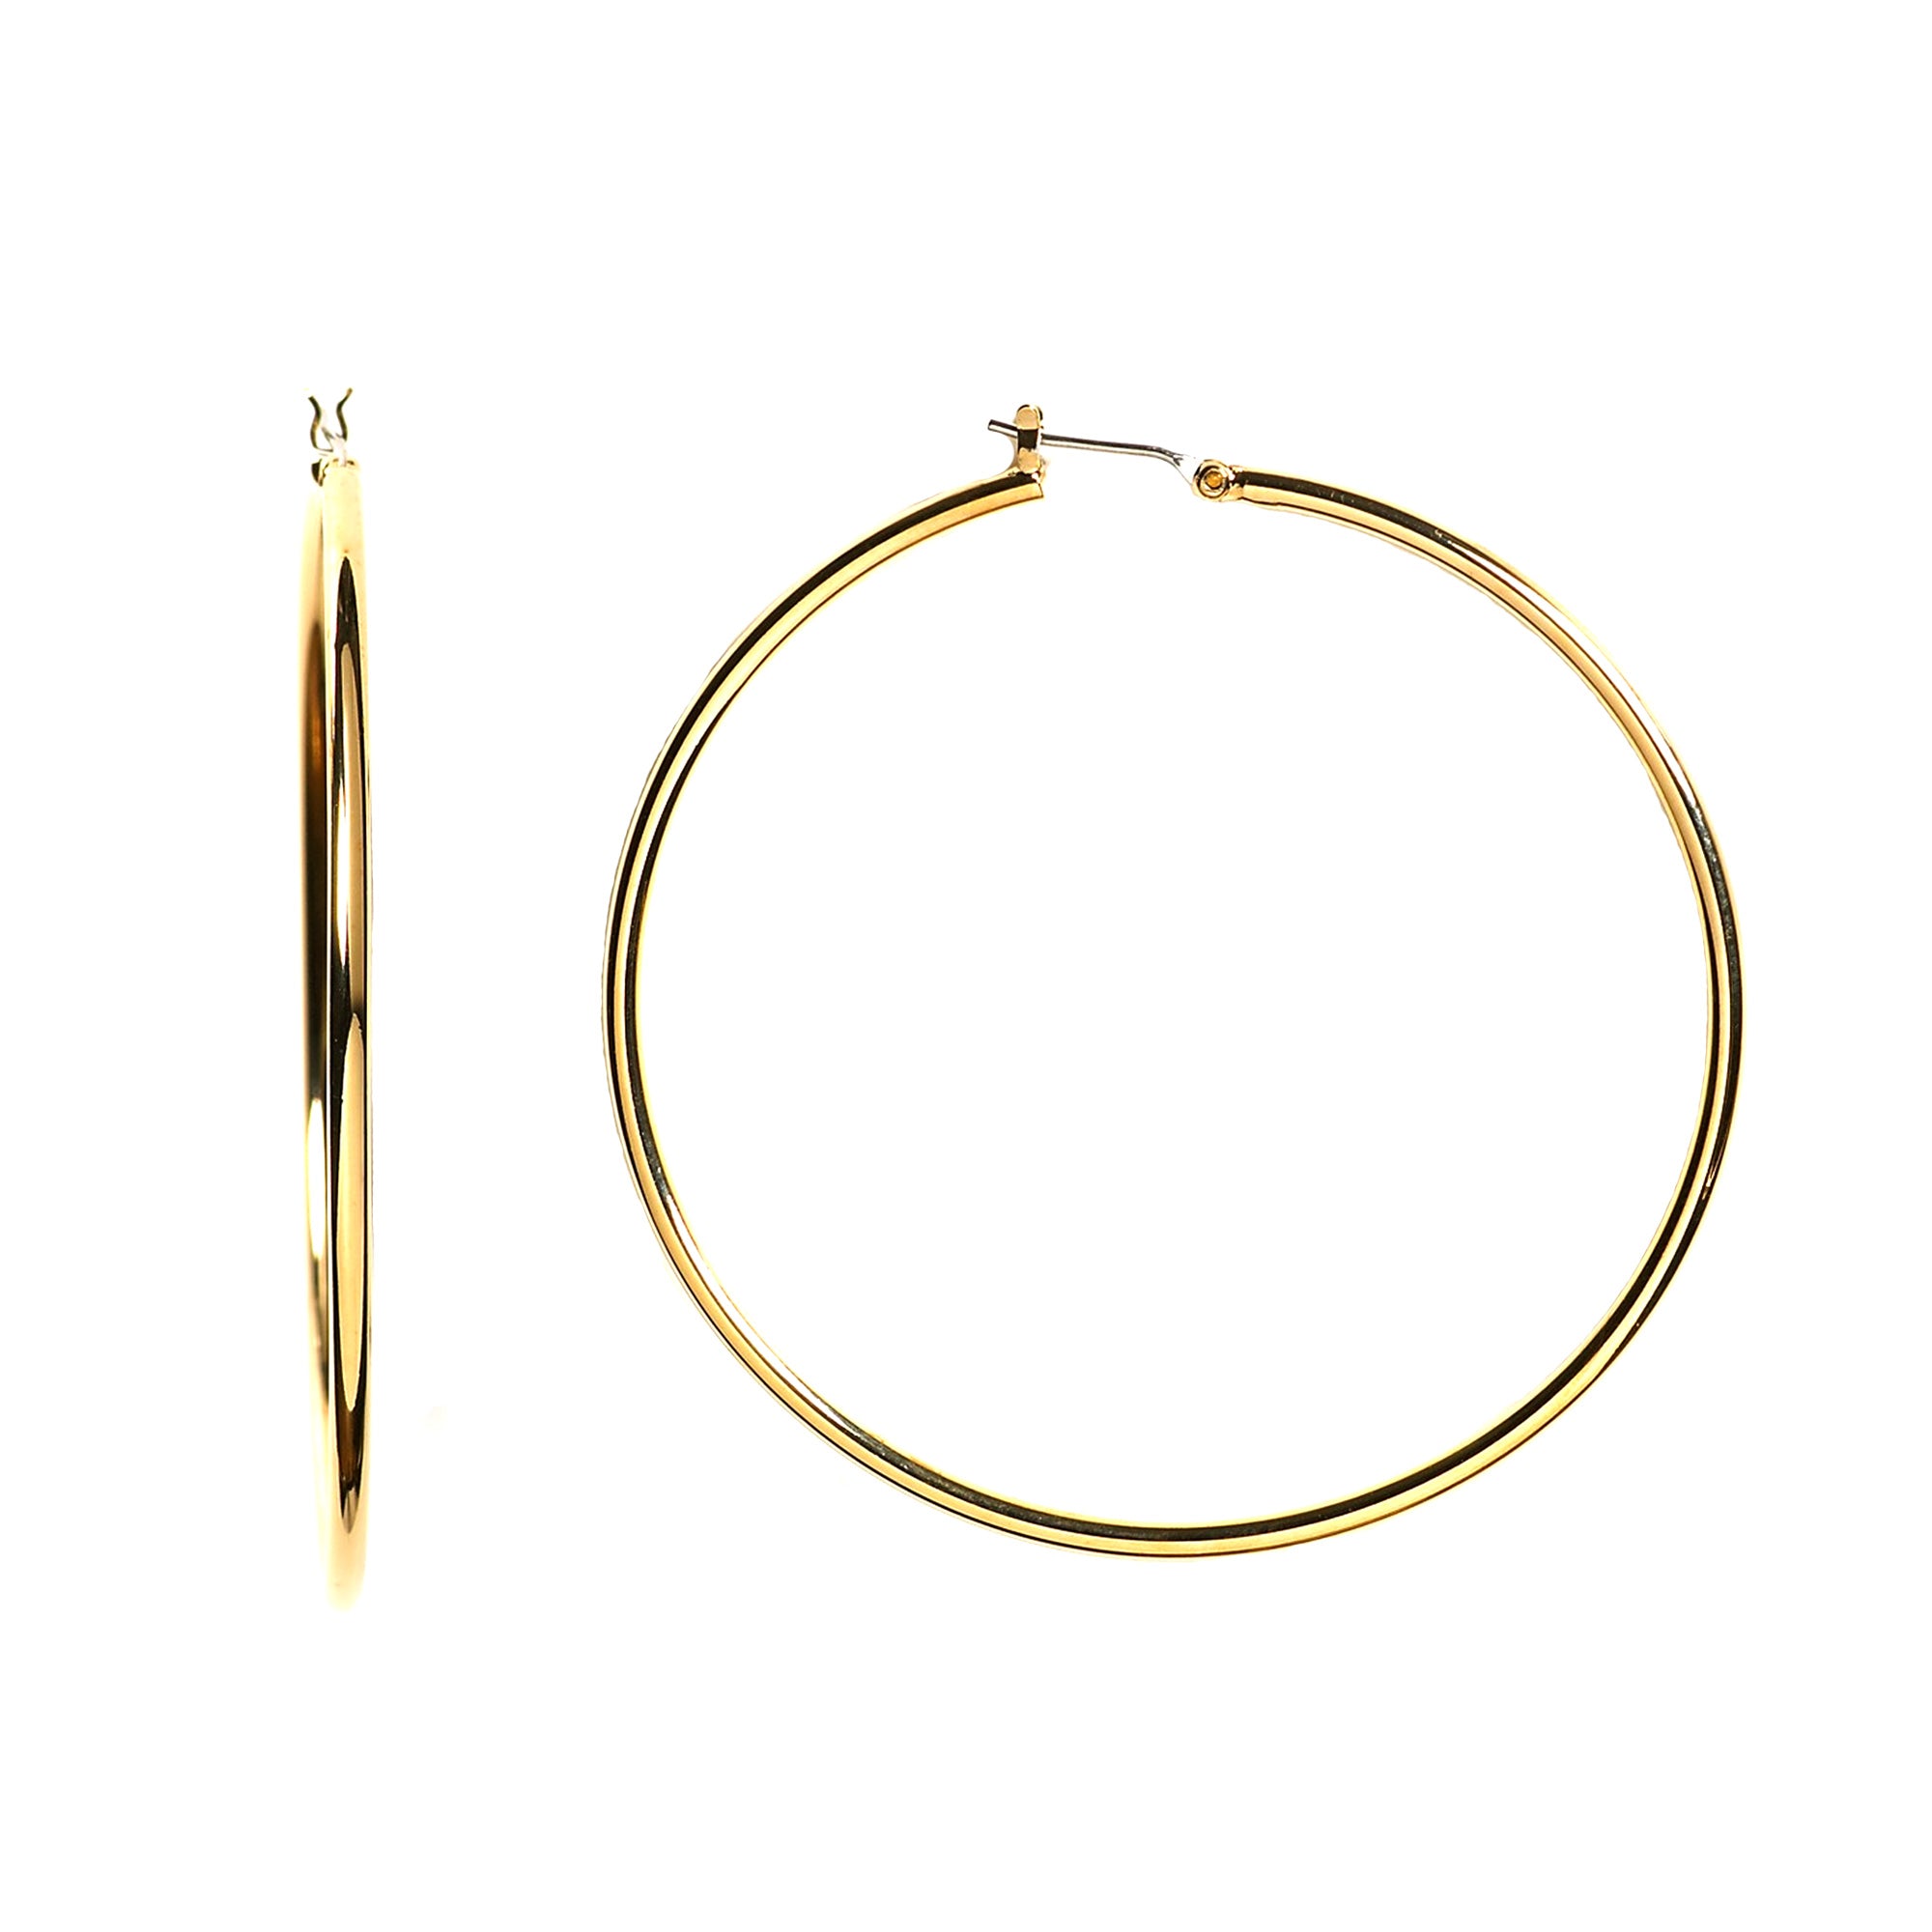 14k gult guld 1,5 mm glänsande runda rörbågeörhängen fina designersmycken för män och kvinnor